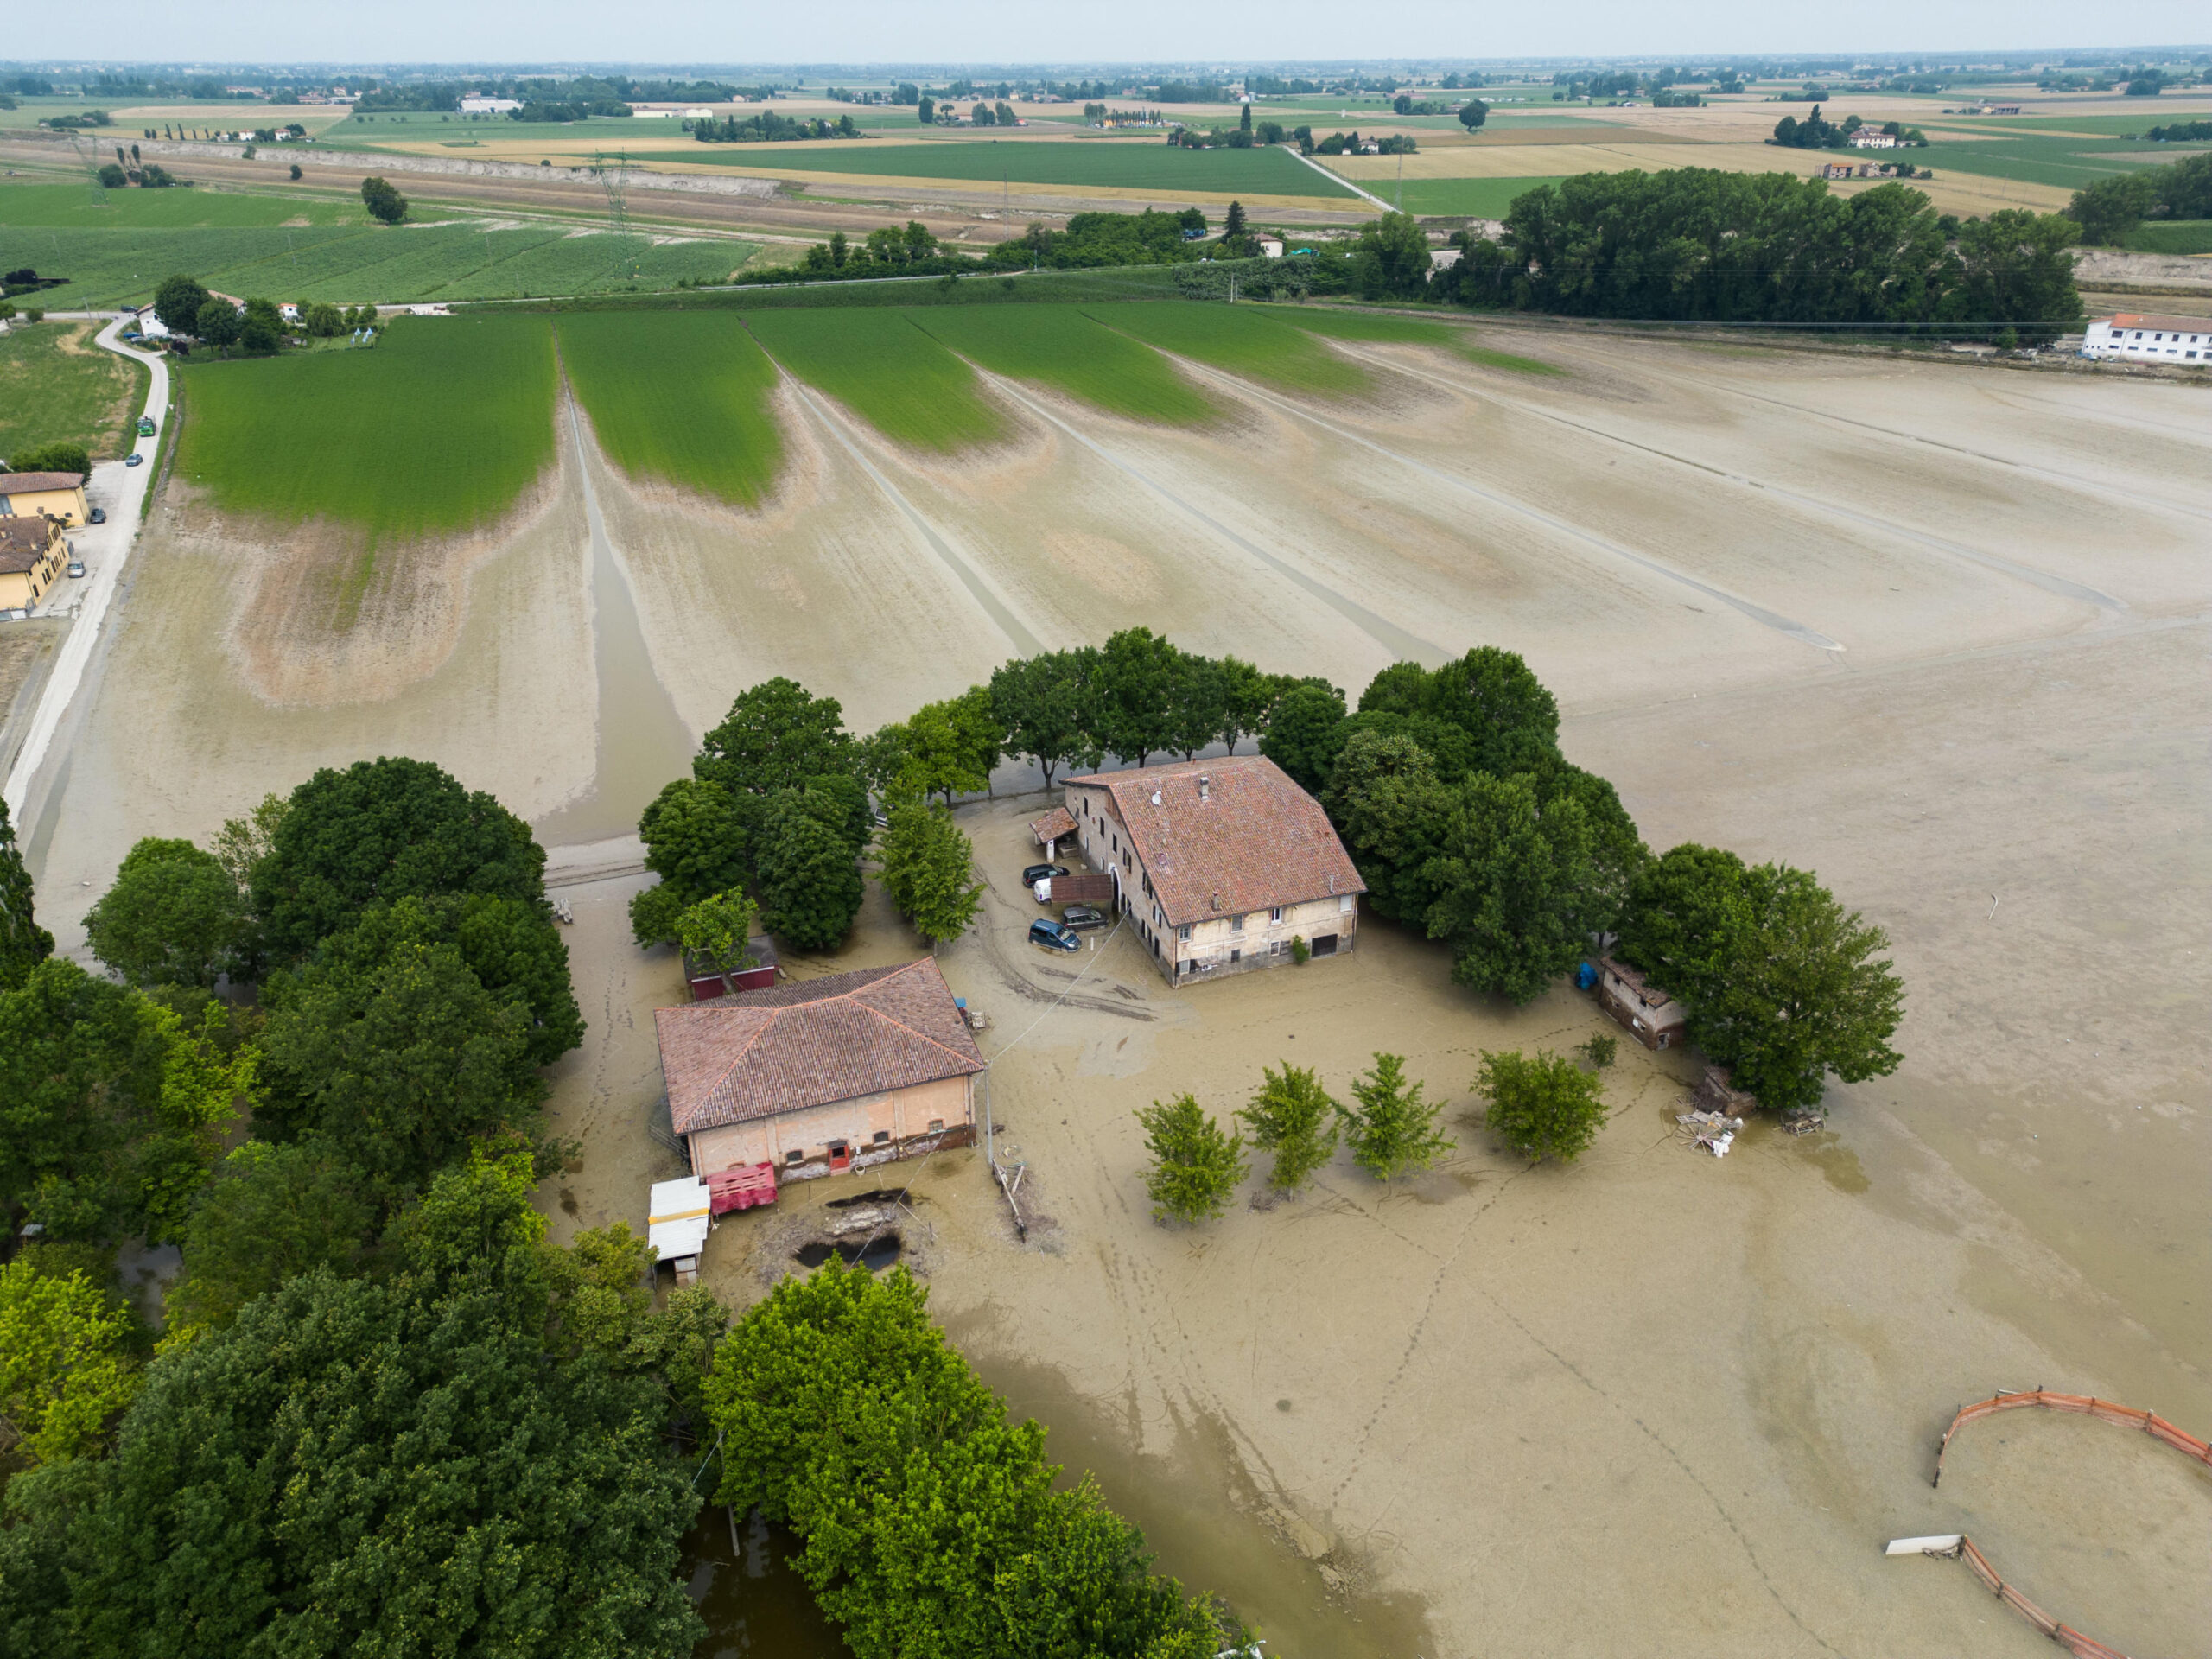 Danni alluvione Emilia Romagna: Autorità concede proroga versamento oneri